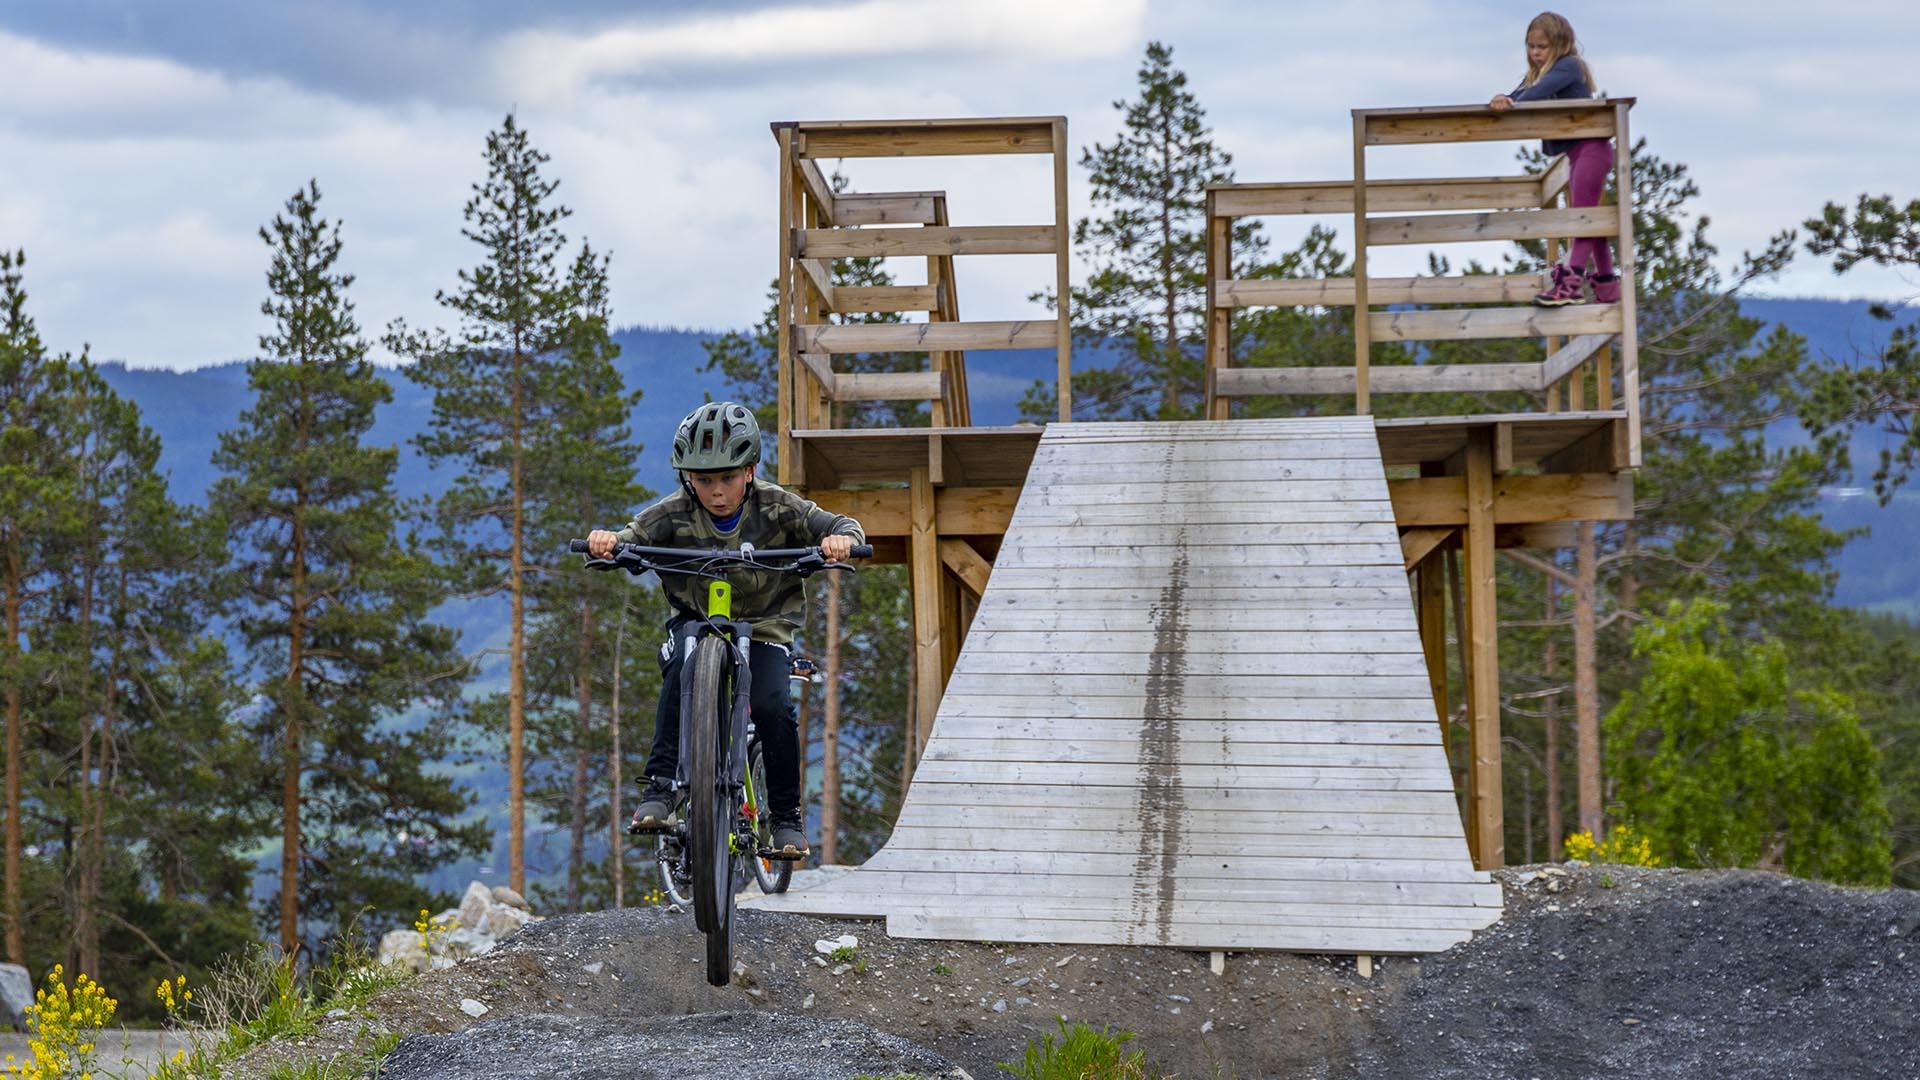 Ein Junge auf einem Mountainbike ist gerade einer steile Rampe von einem hölzernen Turm als technisches Element eines Mountainbiketrails hinuntergefahren.